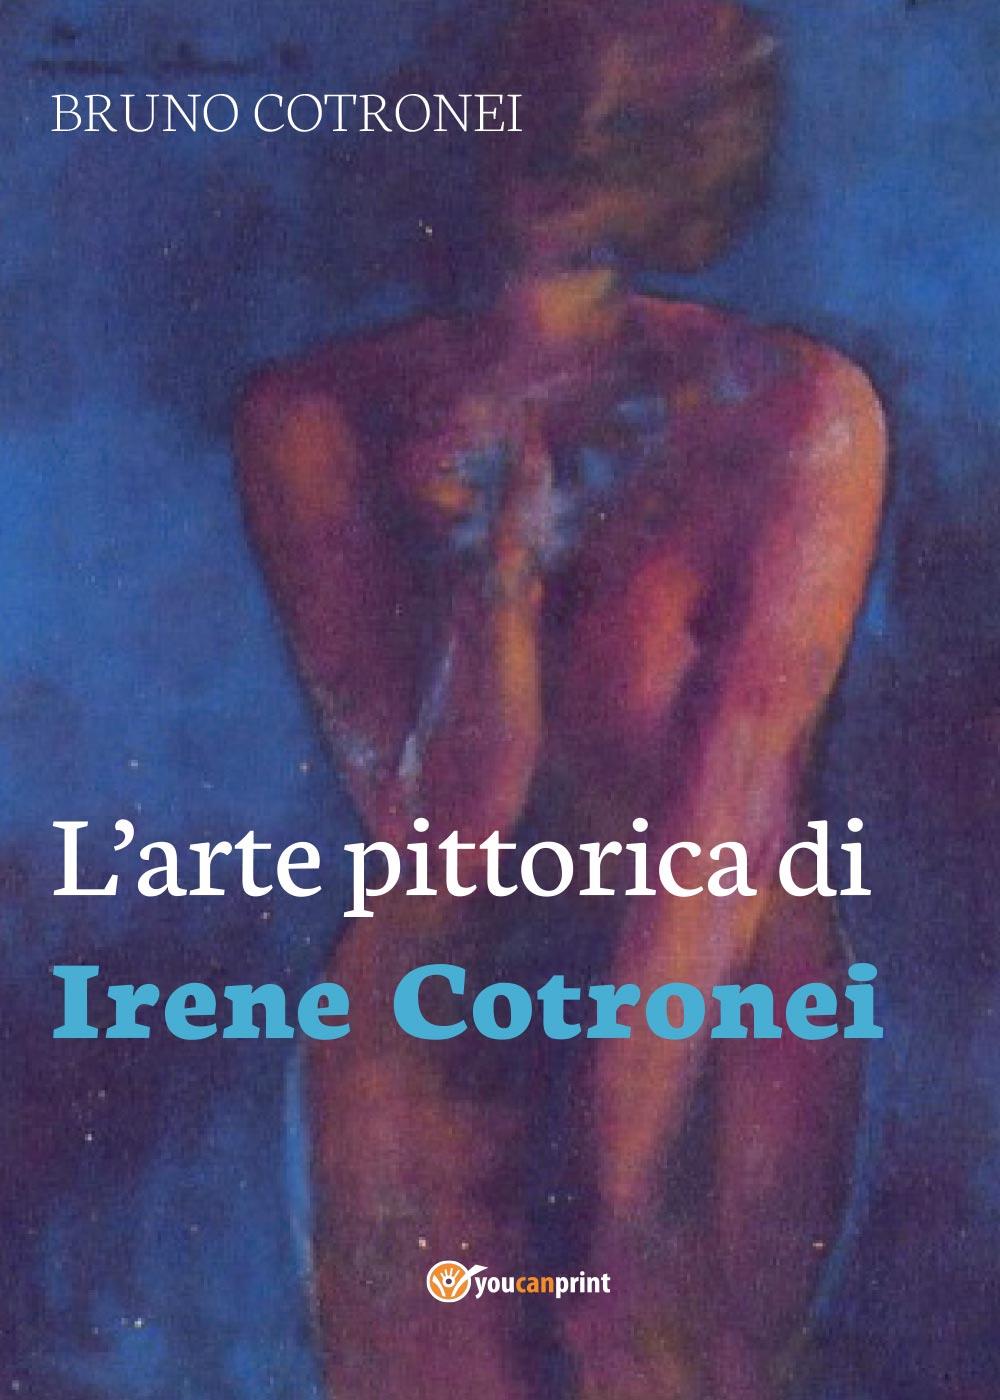 L’arte pittorica di Irene Cotronei